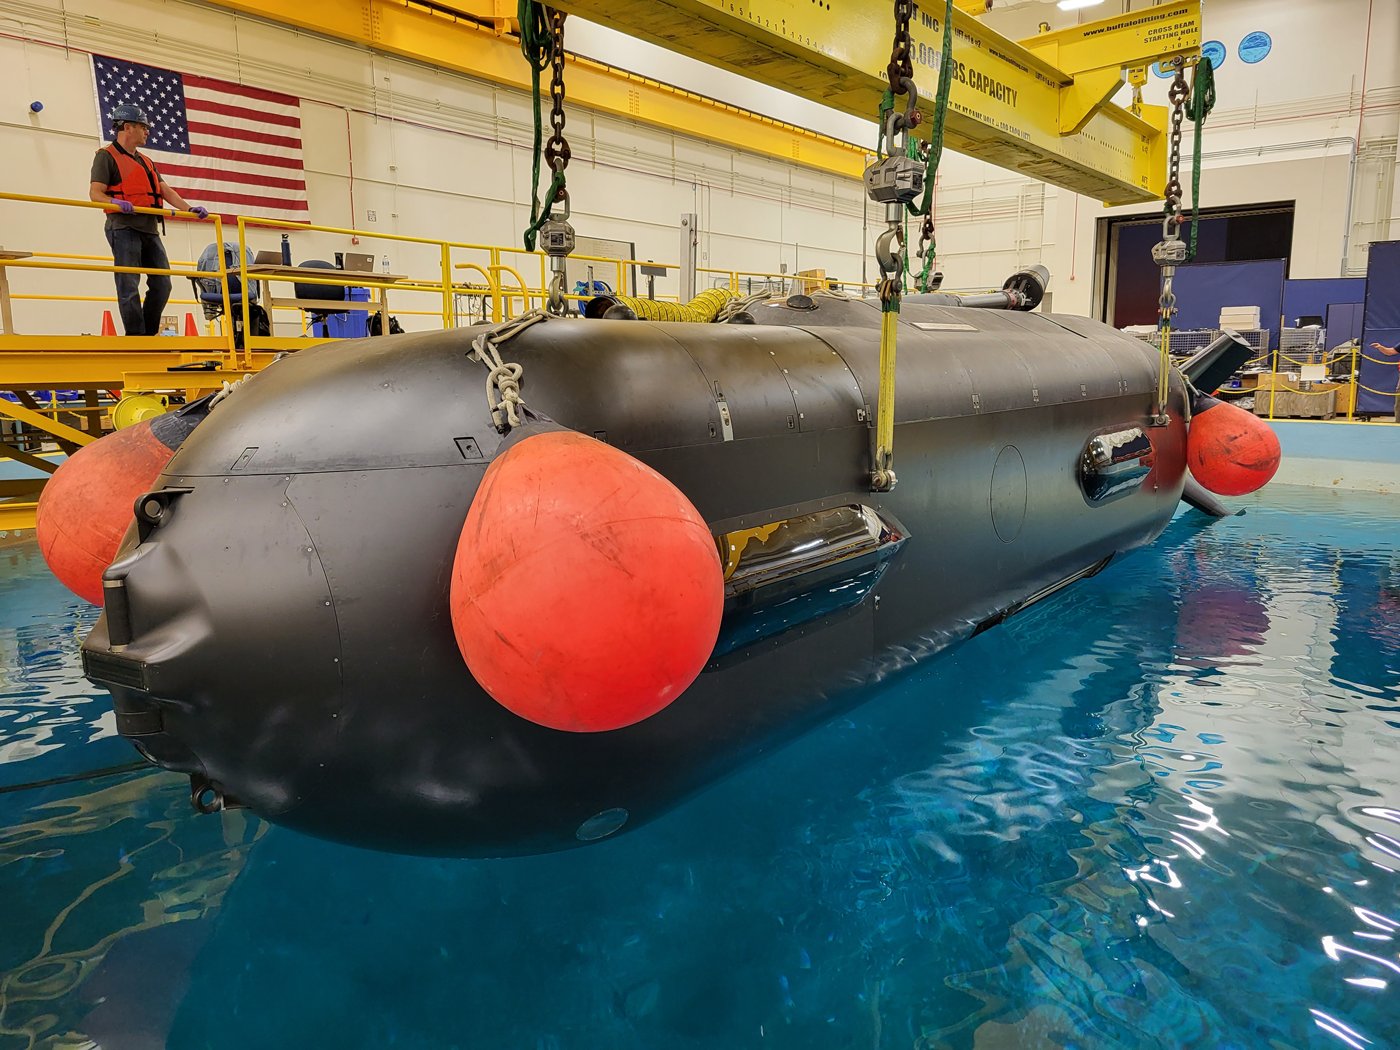 proliferarea vehiculelor submersibile fara echipaj mai are de asteptat